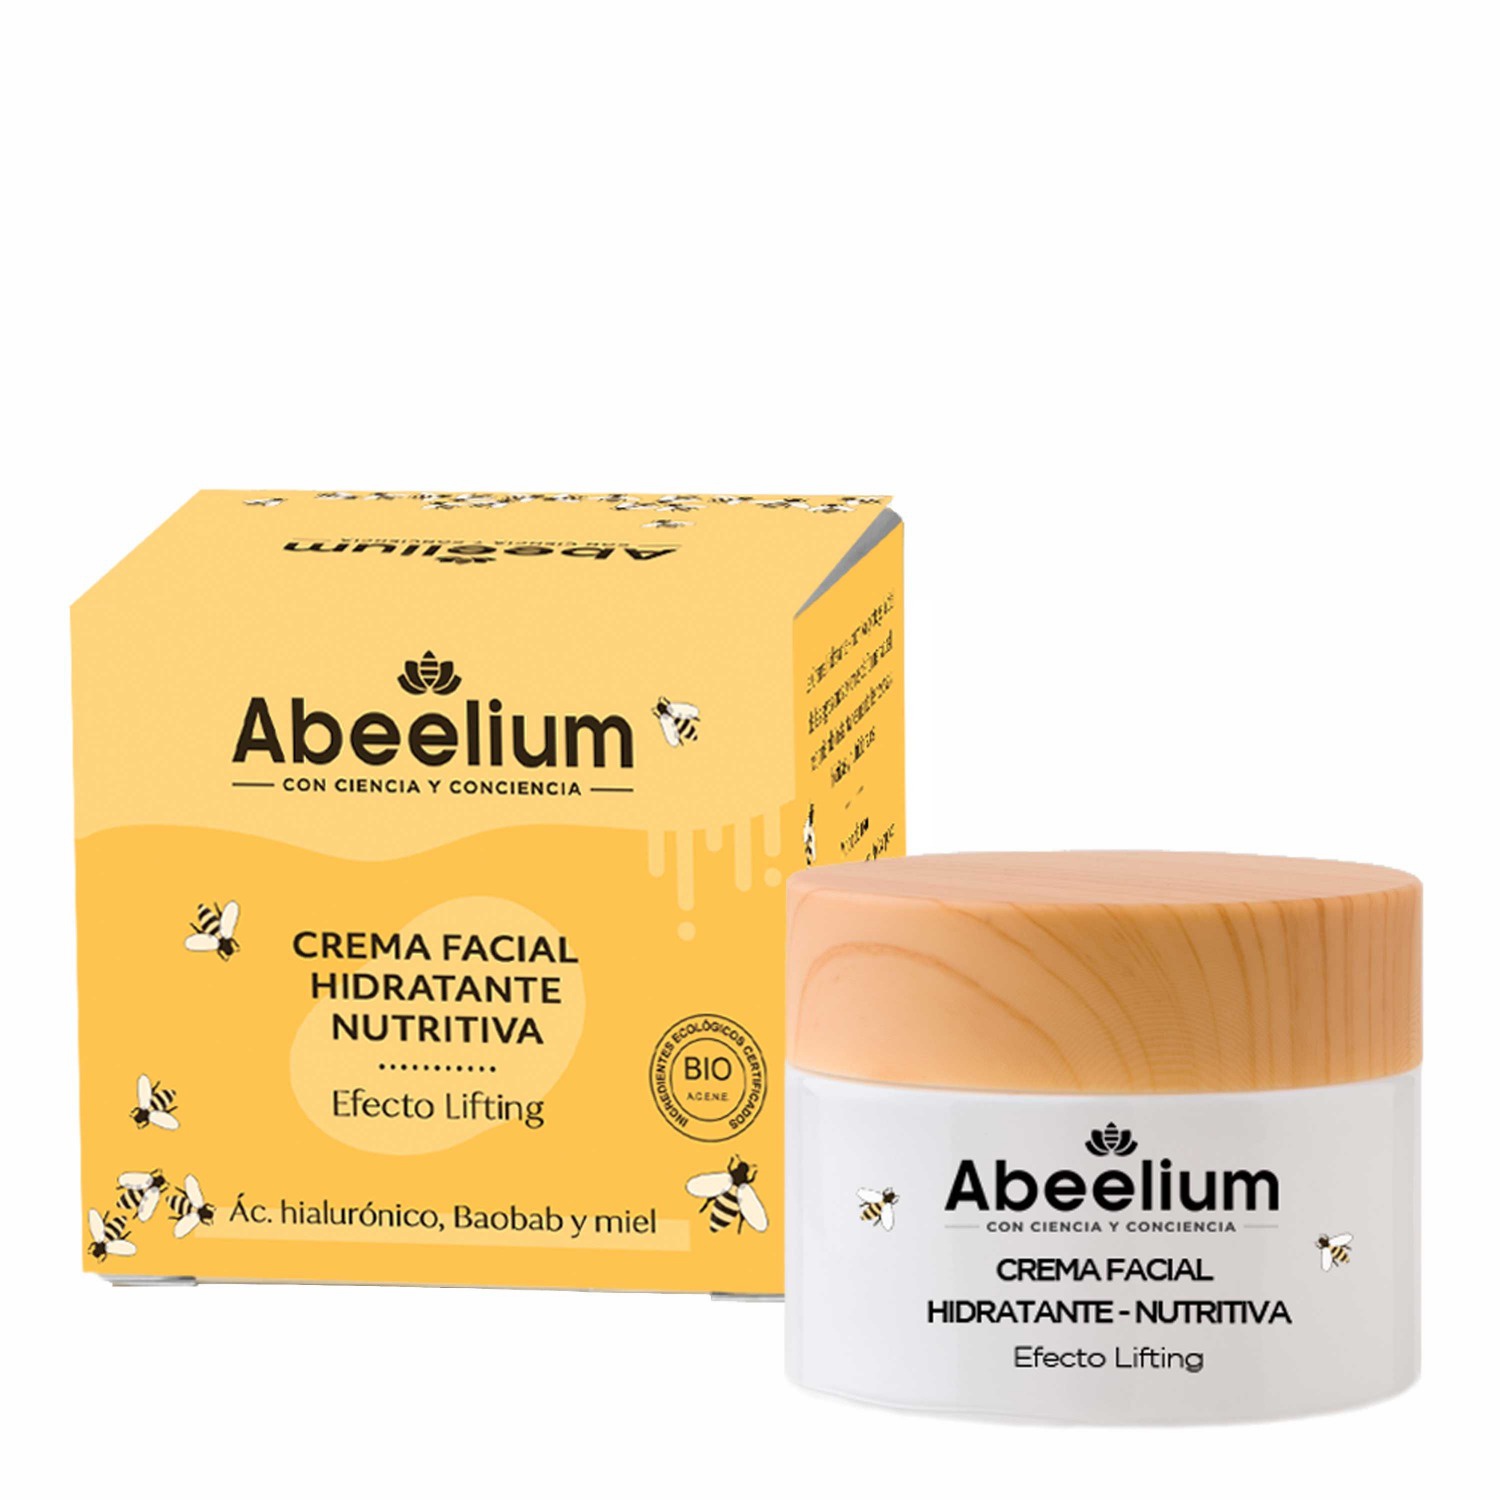 Abeelim Crema facial Hidratante, Nutritiva – Ác. hialurónico, aceite de baobab y Miel